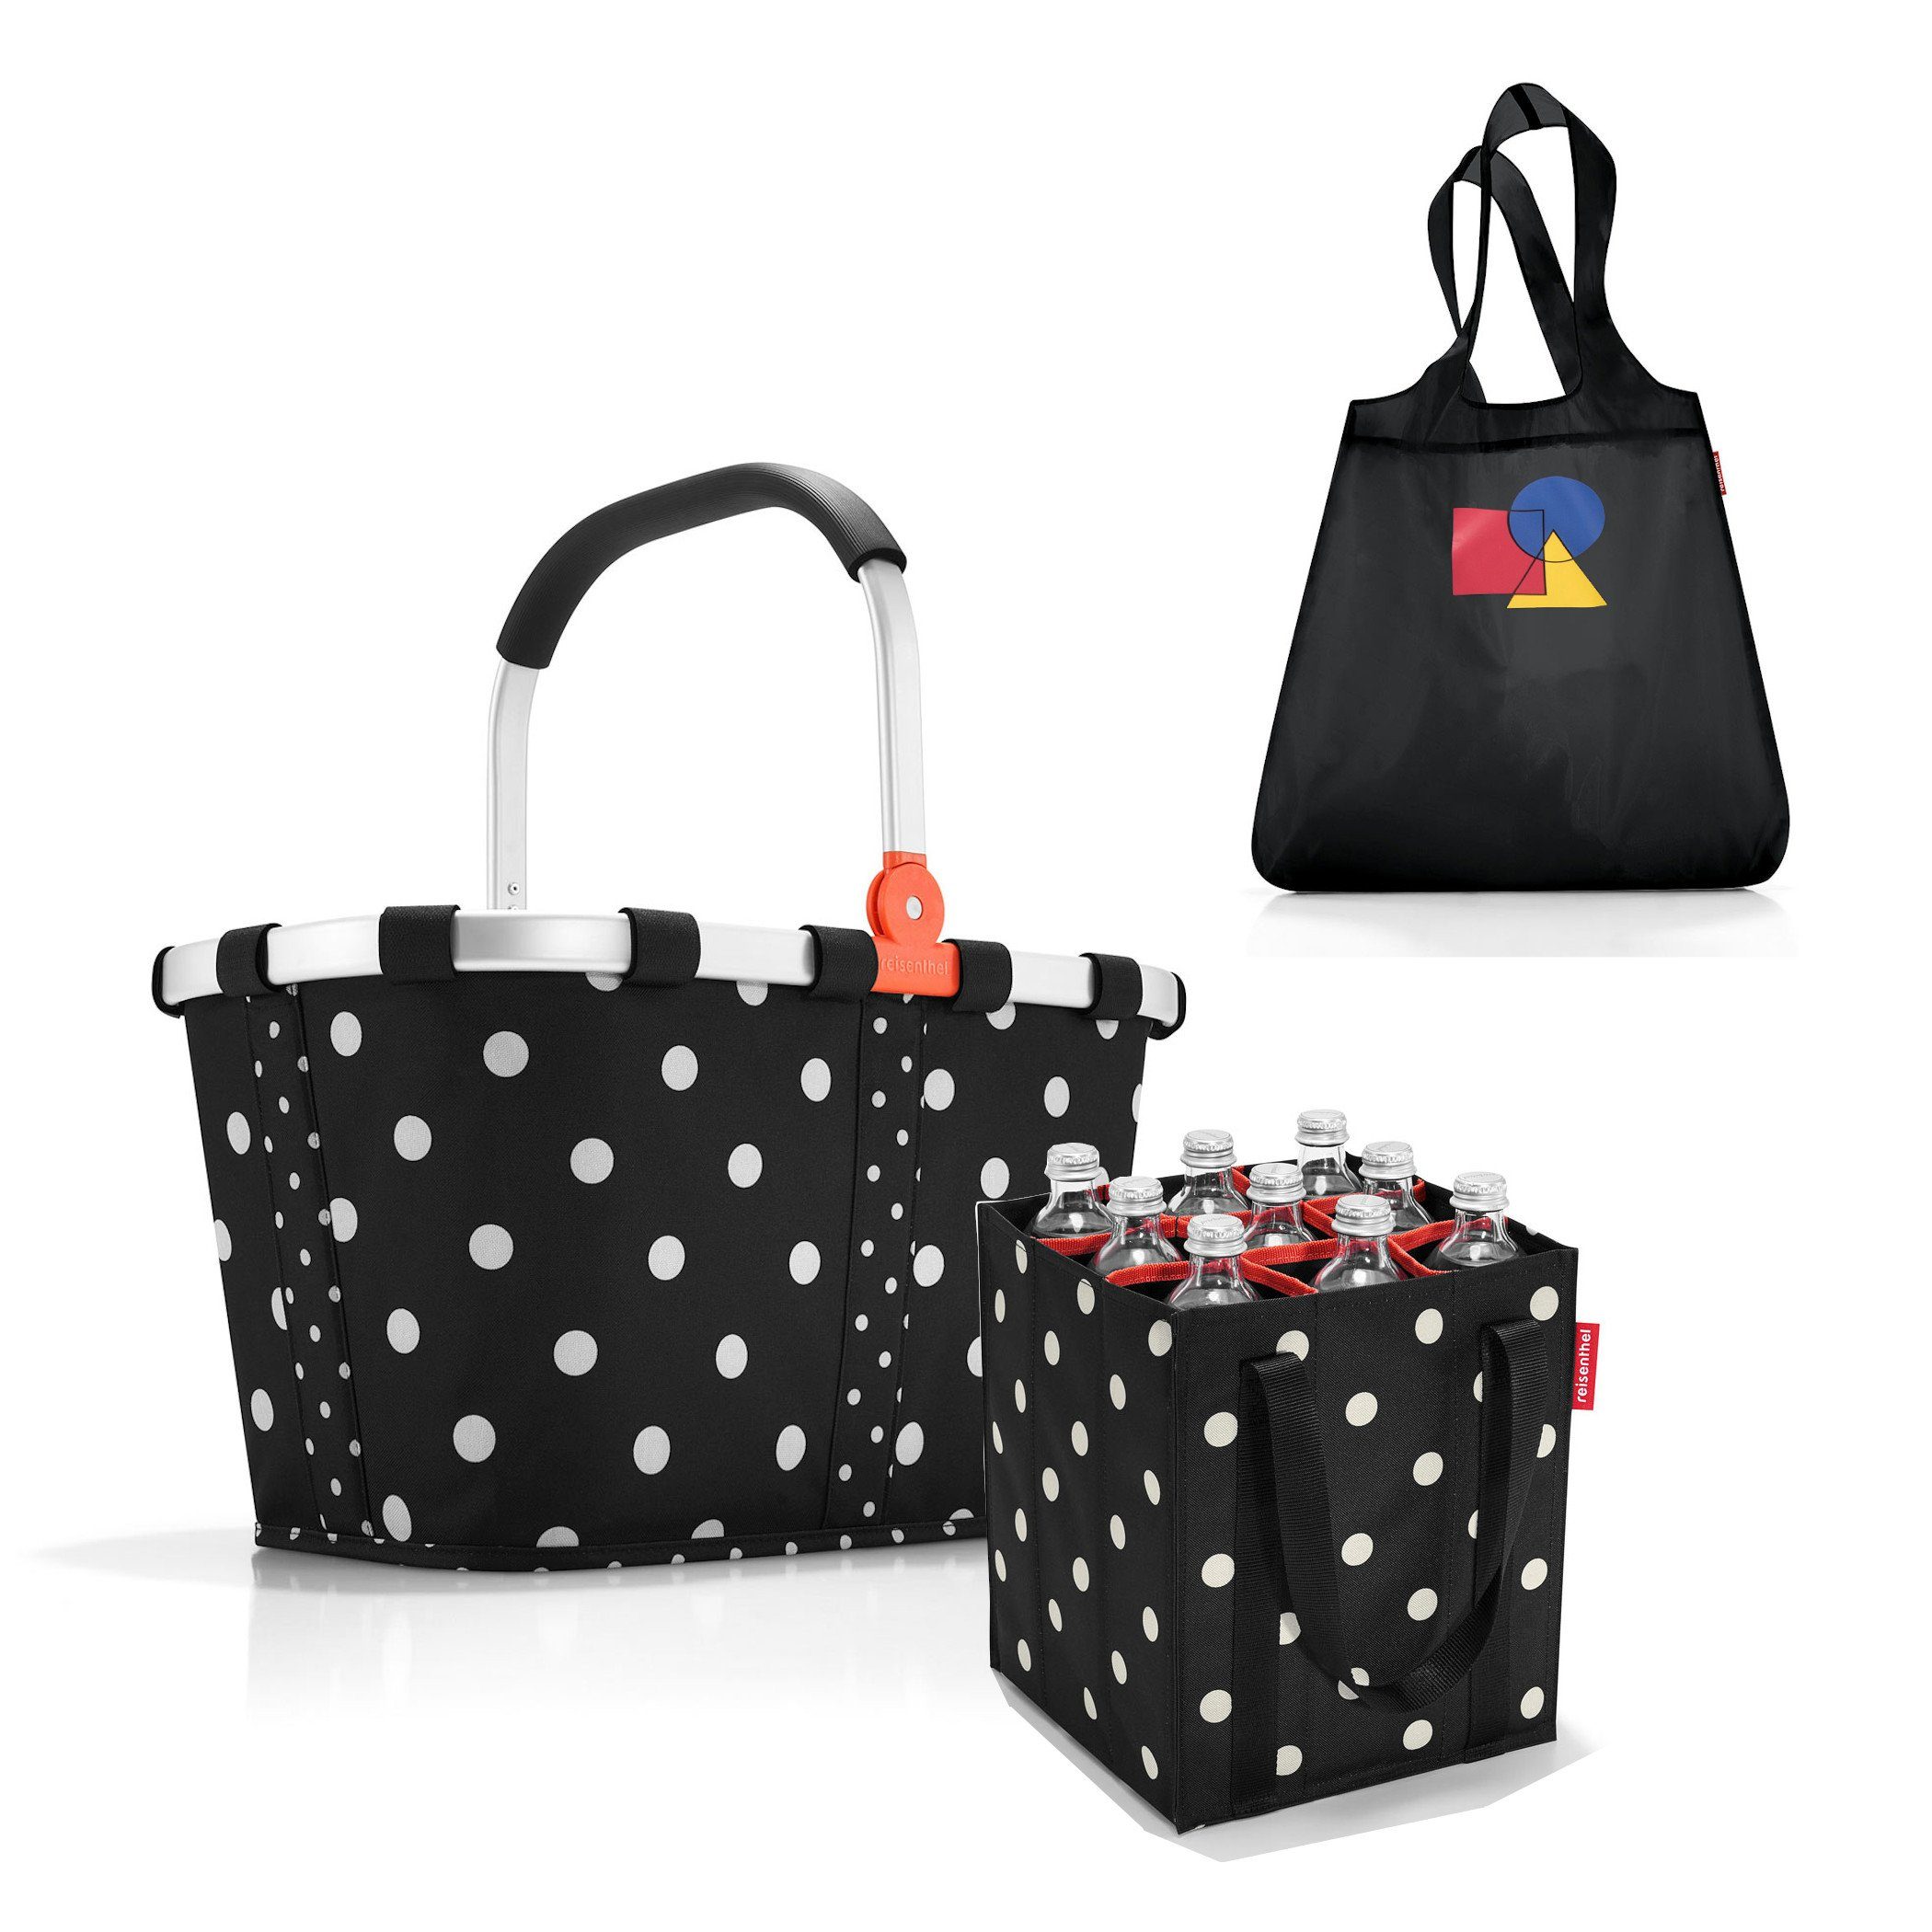 REISENTHEL® Einkaufskorb Set aus carrybag, coolerbag und bottlebag,  Einkaufskorb-Set für Wochenmarkt und Großeinkauf